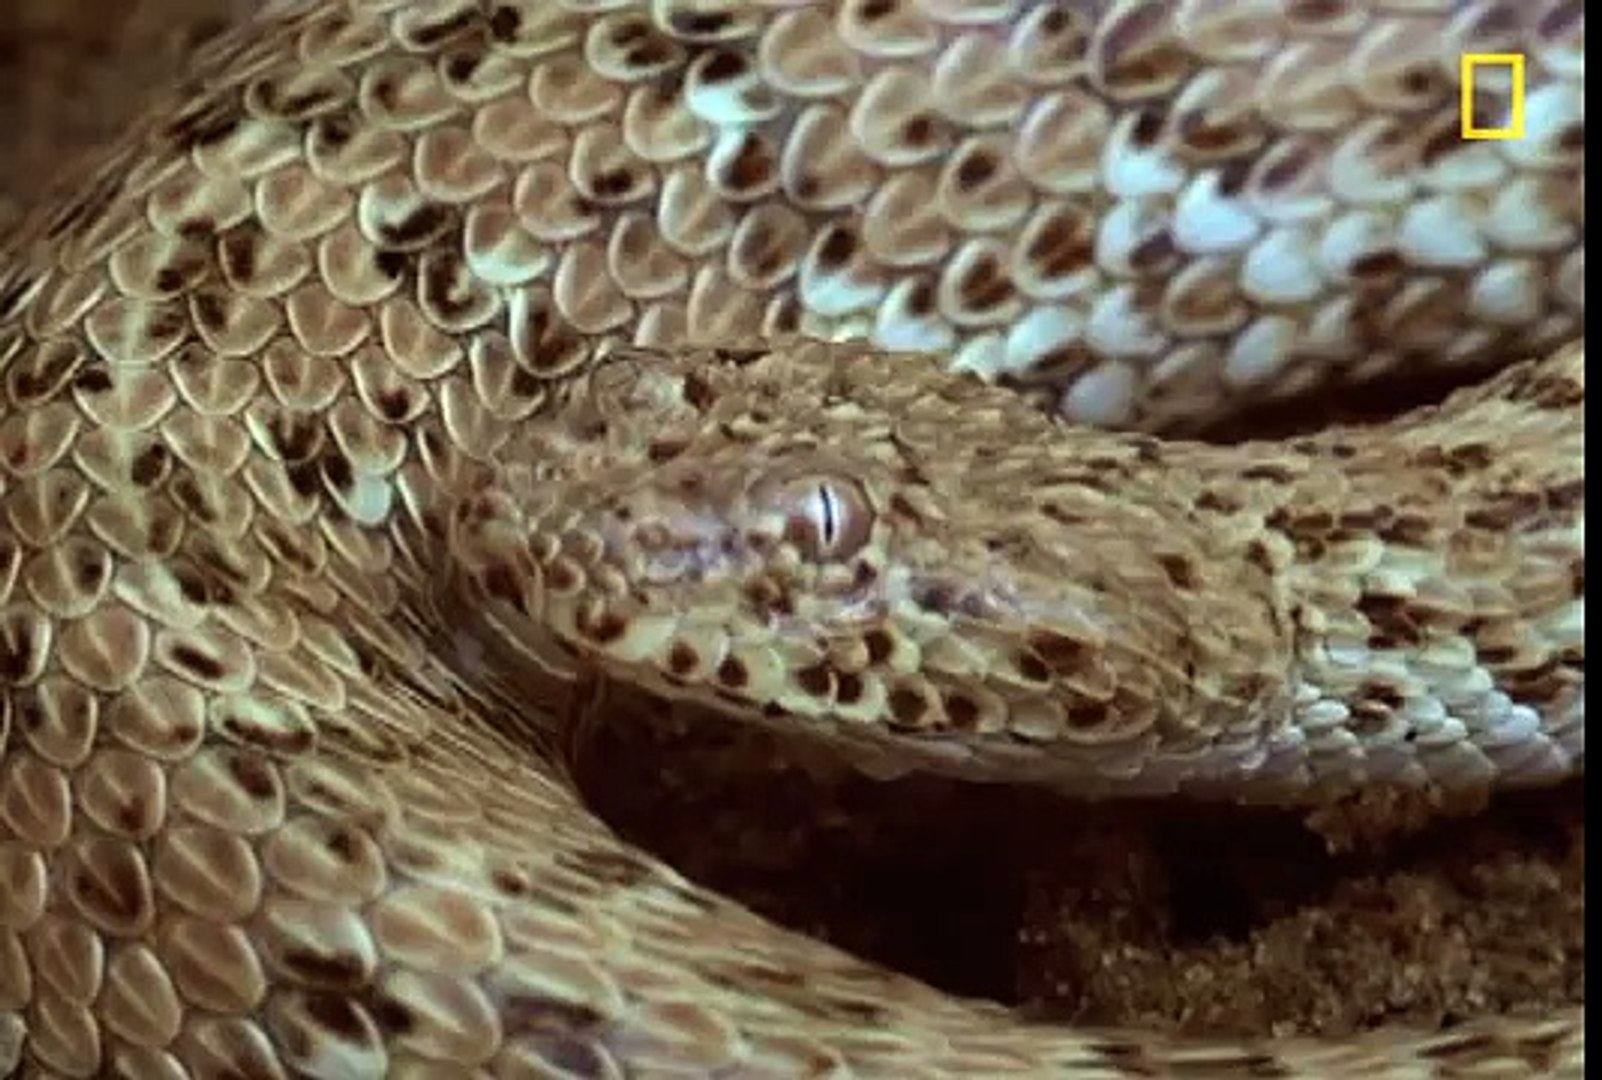 (Snake) vs (Lizard)